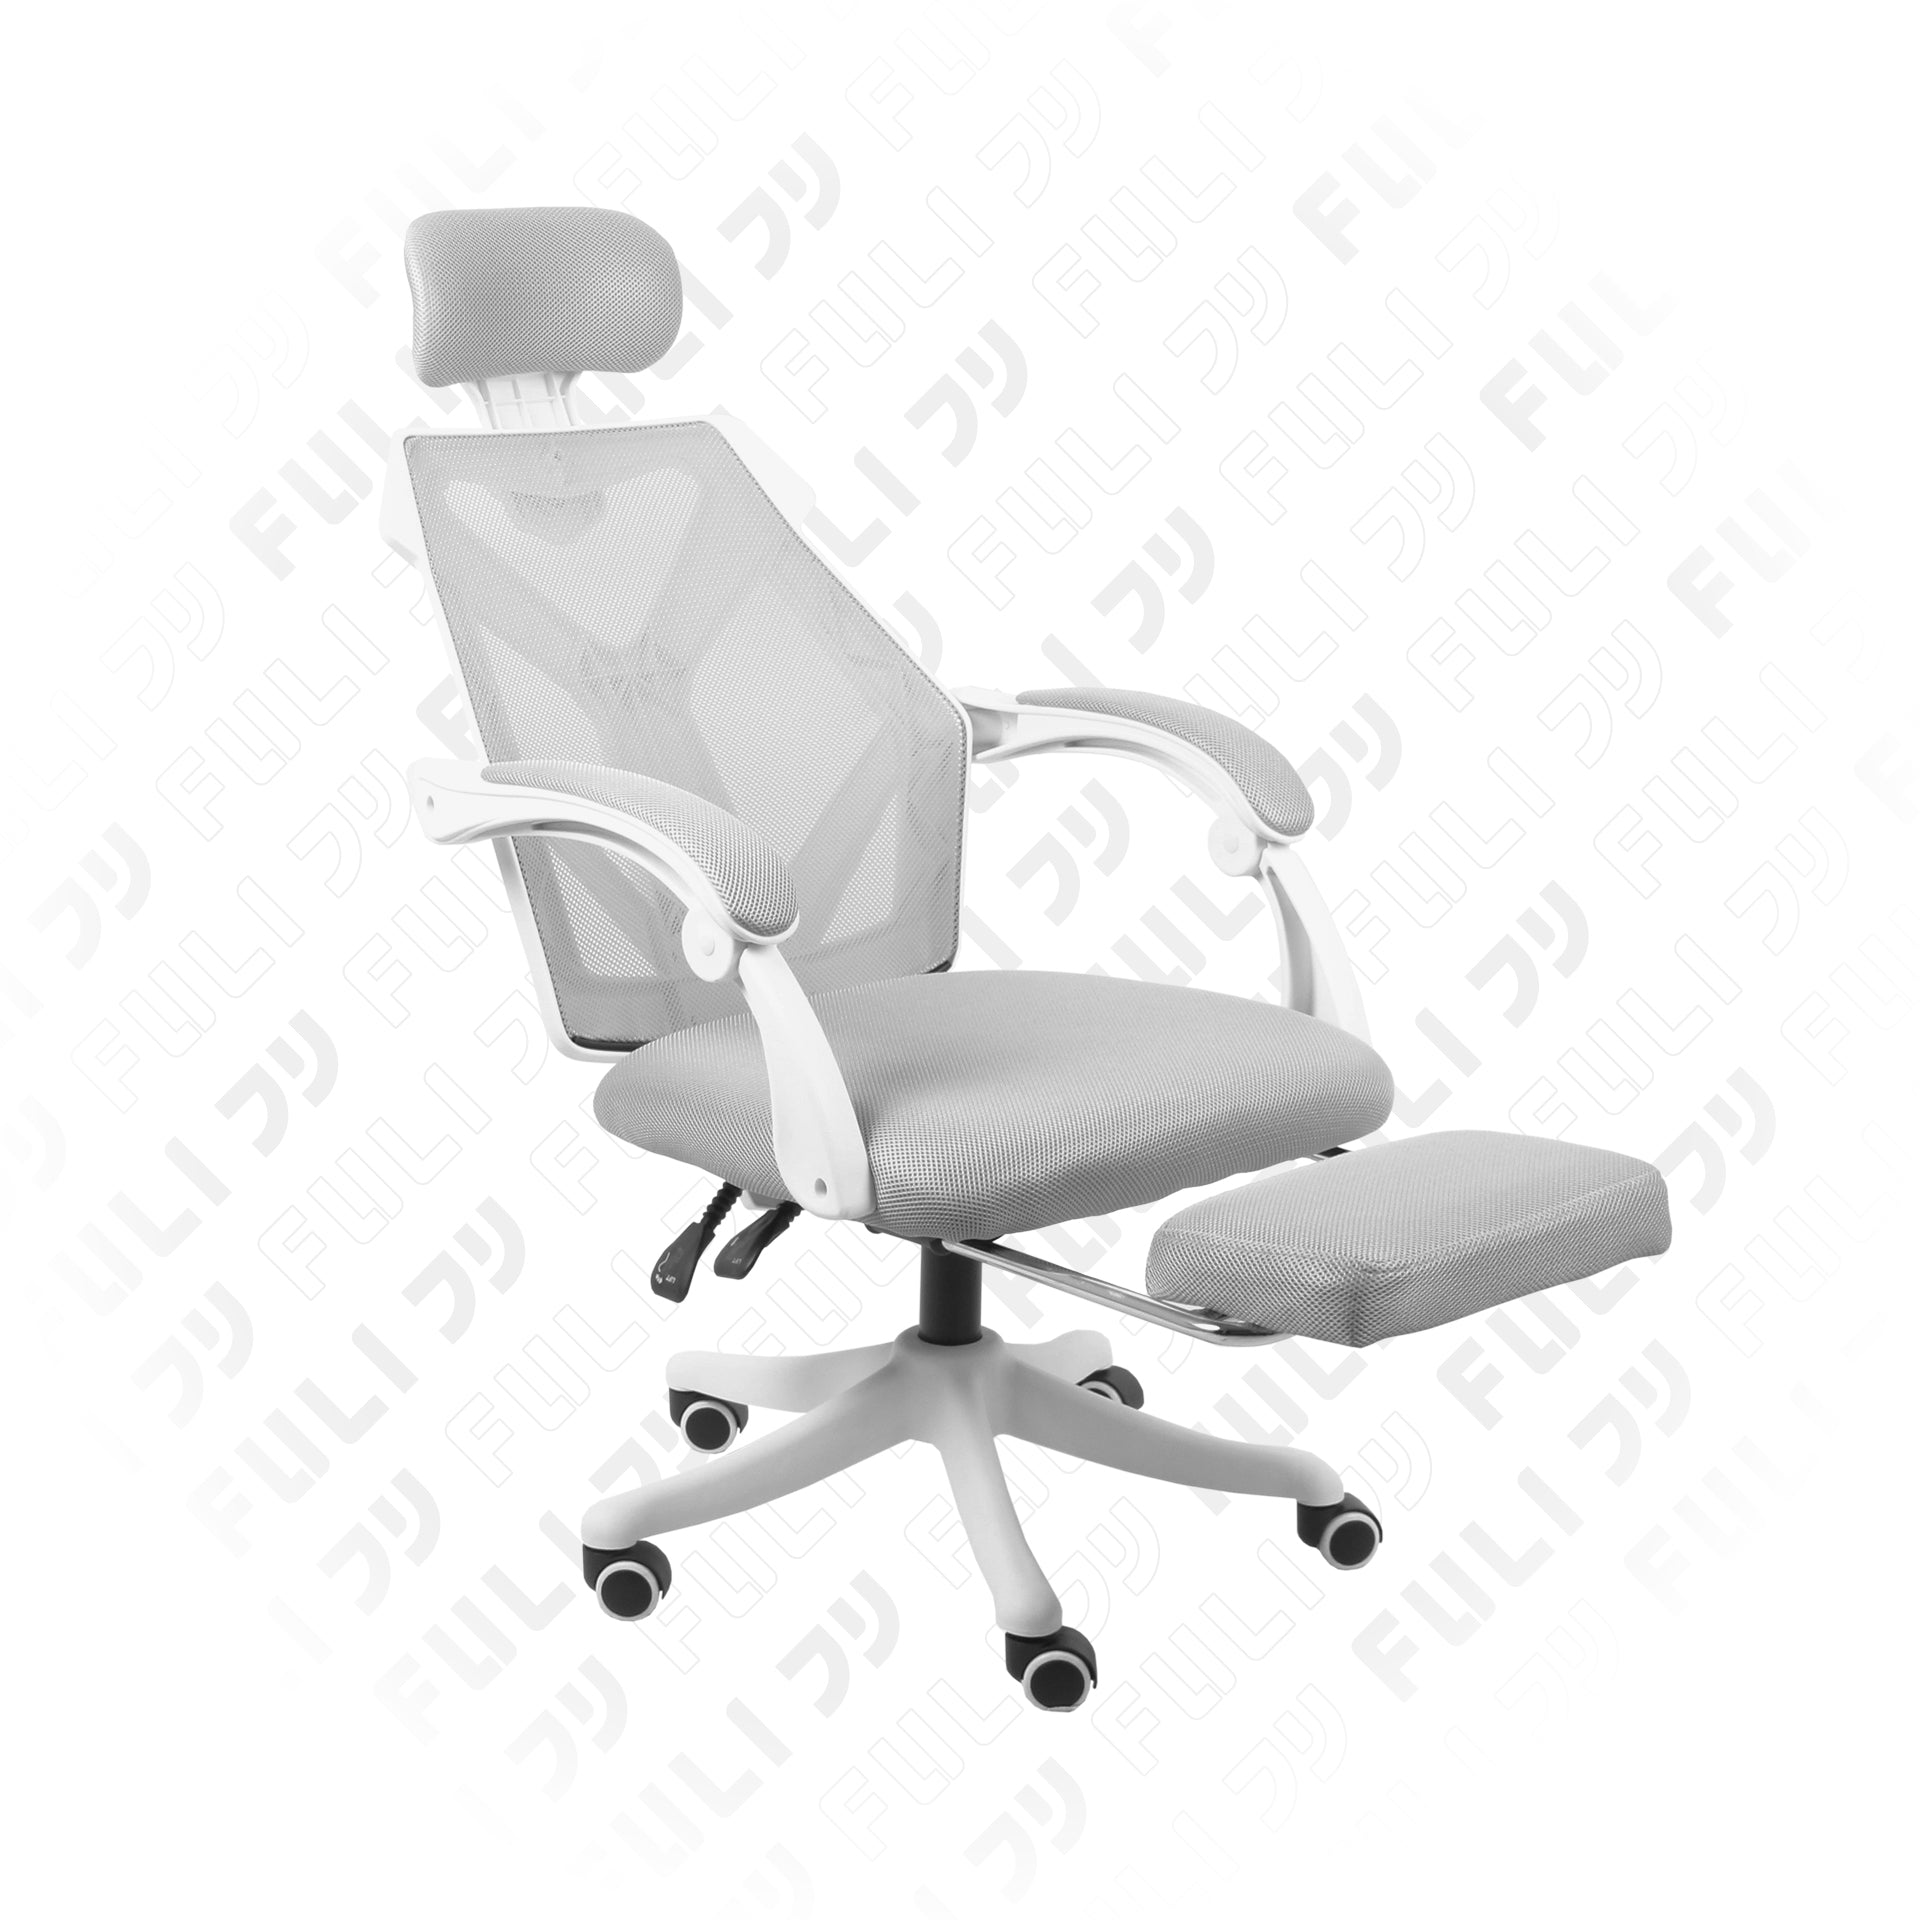 เก้าอี้สุขภาพ รุ่น X8 - ขาว | FULI X8 ErgoChair - White | X8 エルゴチェア - ホワイト